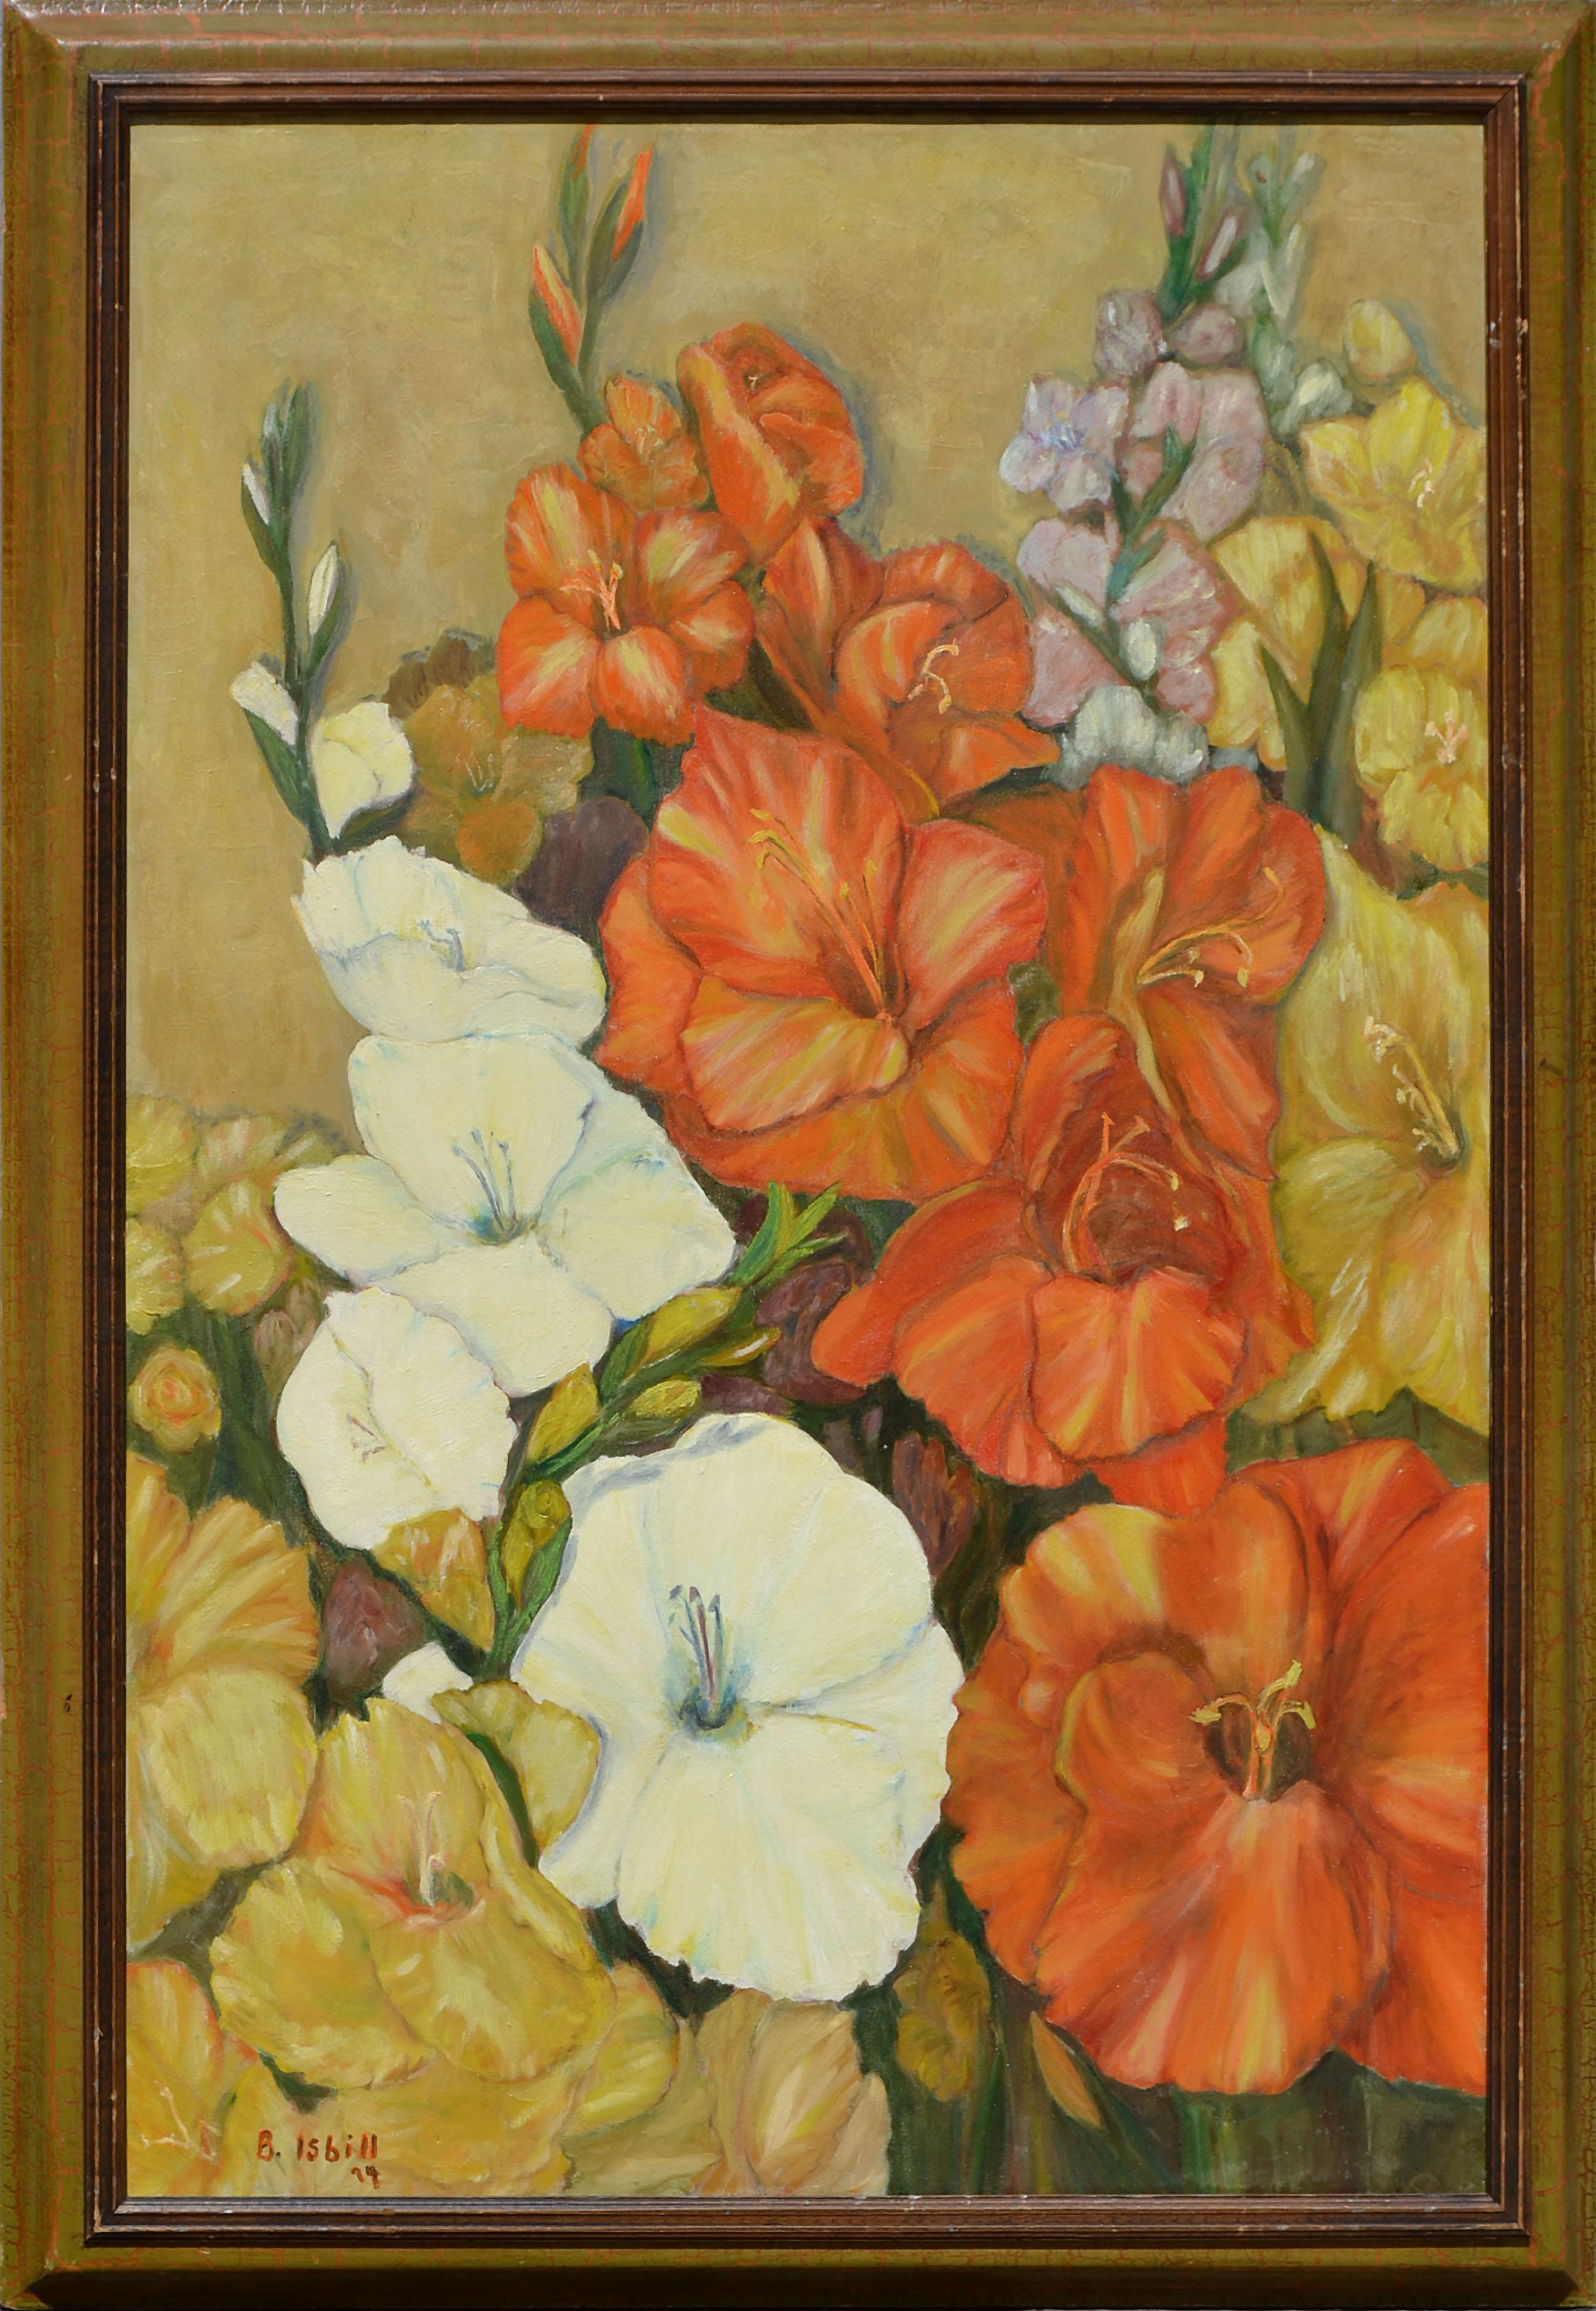 B Isbill Still-Life Painting - Gladiolas in Bloom - 1970's Floral Still Life